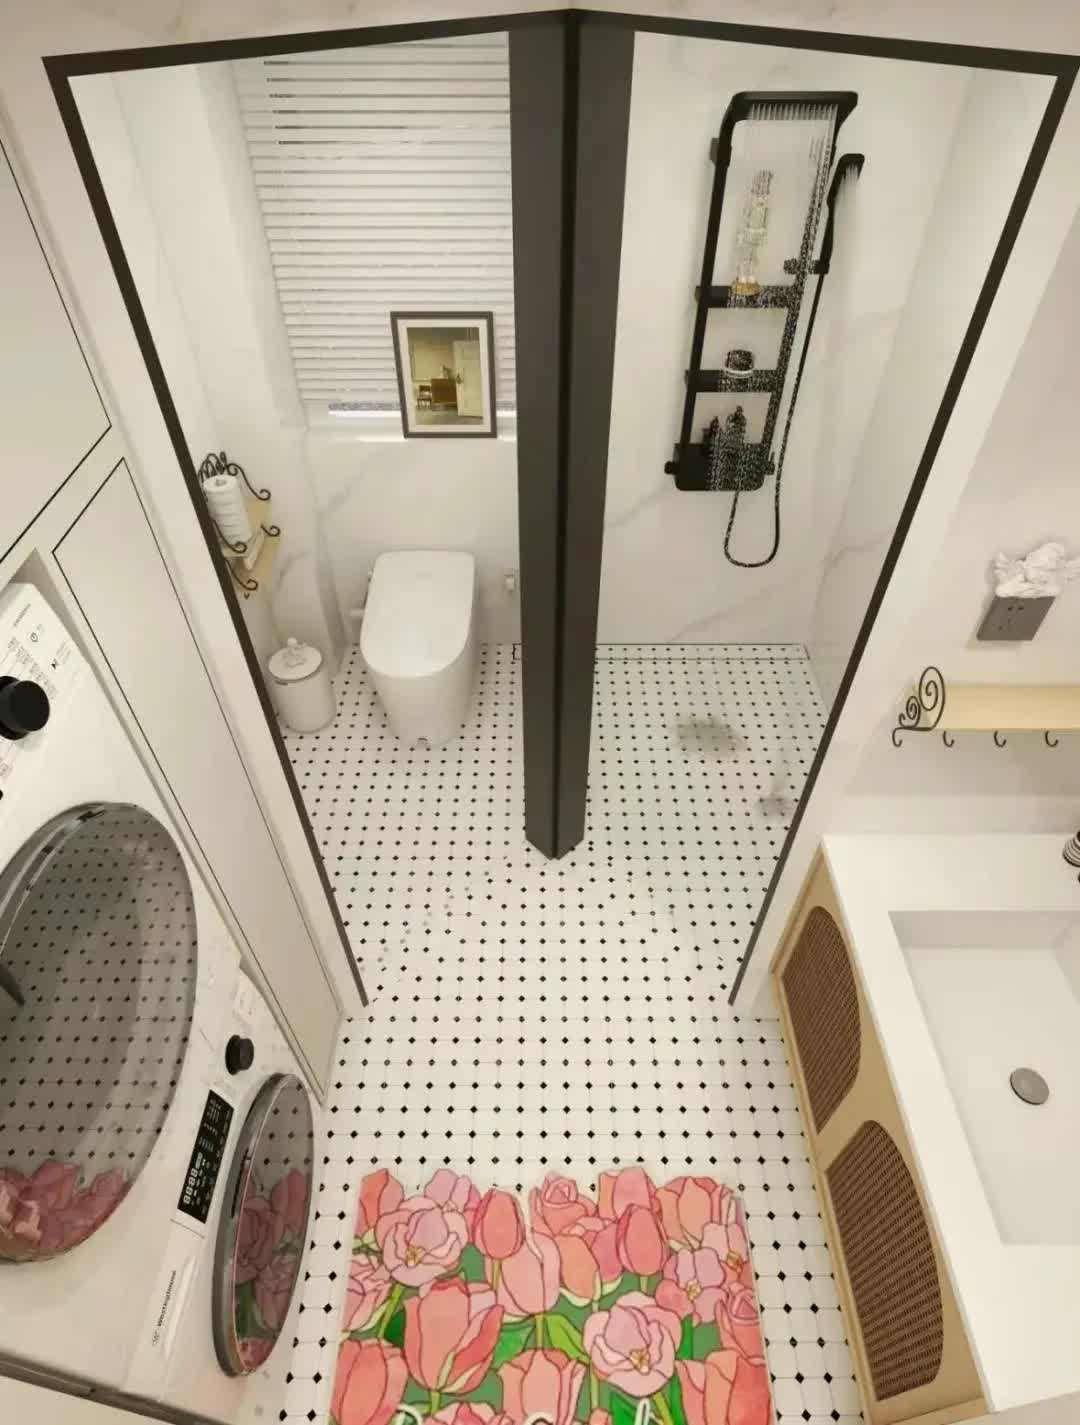 Bất chấp sự phản đối của cả nhà, vợ tôi nhất quyết lắp hai cánh cửa trong phòng tắm- Ảnh 5.